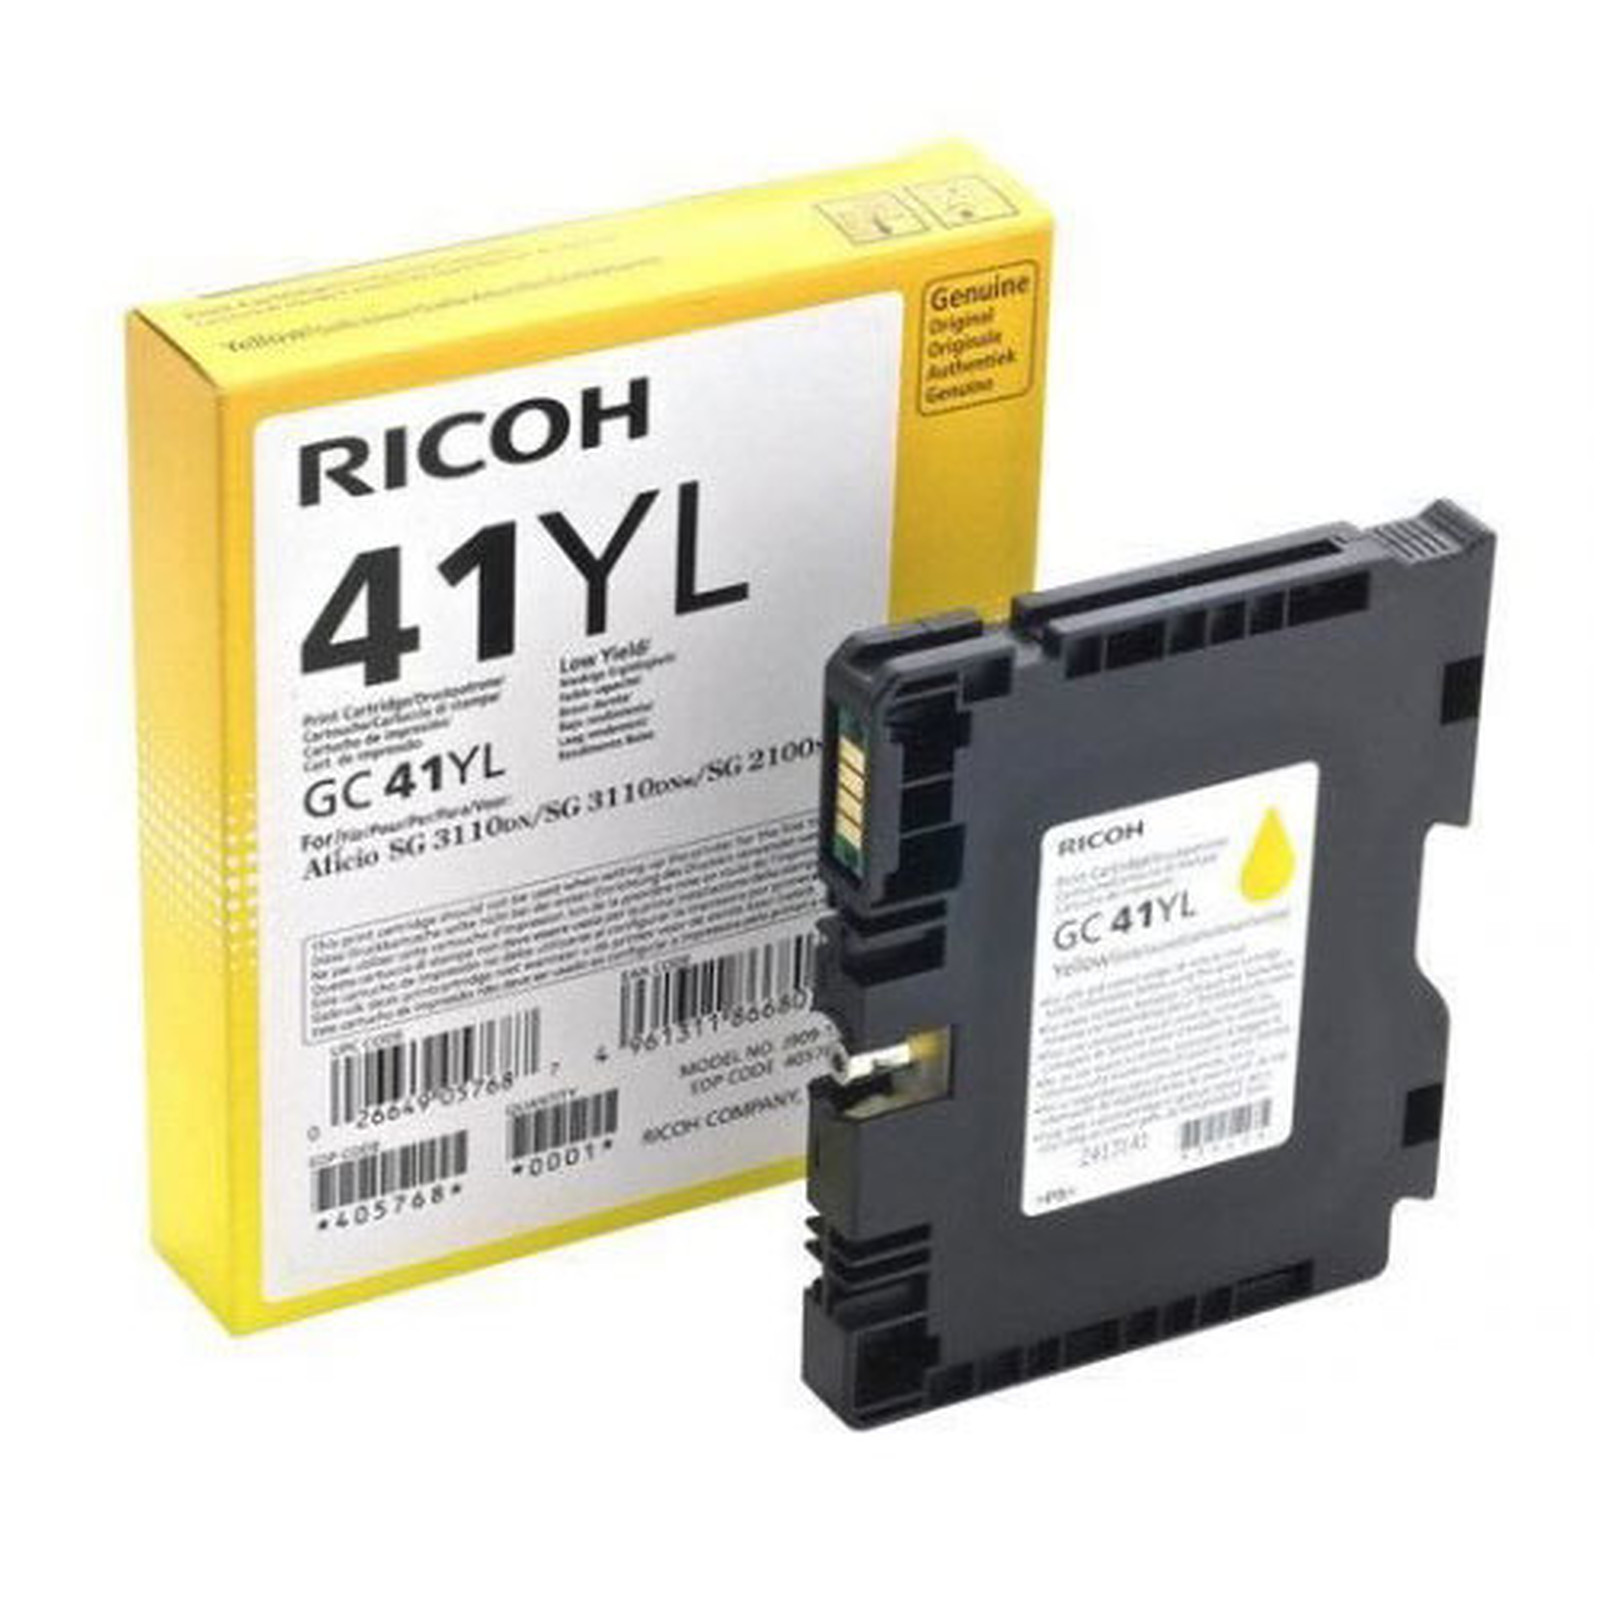 Ricoh GC41YL Jaune - 405768 - Cartouche imprimante Ricoh